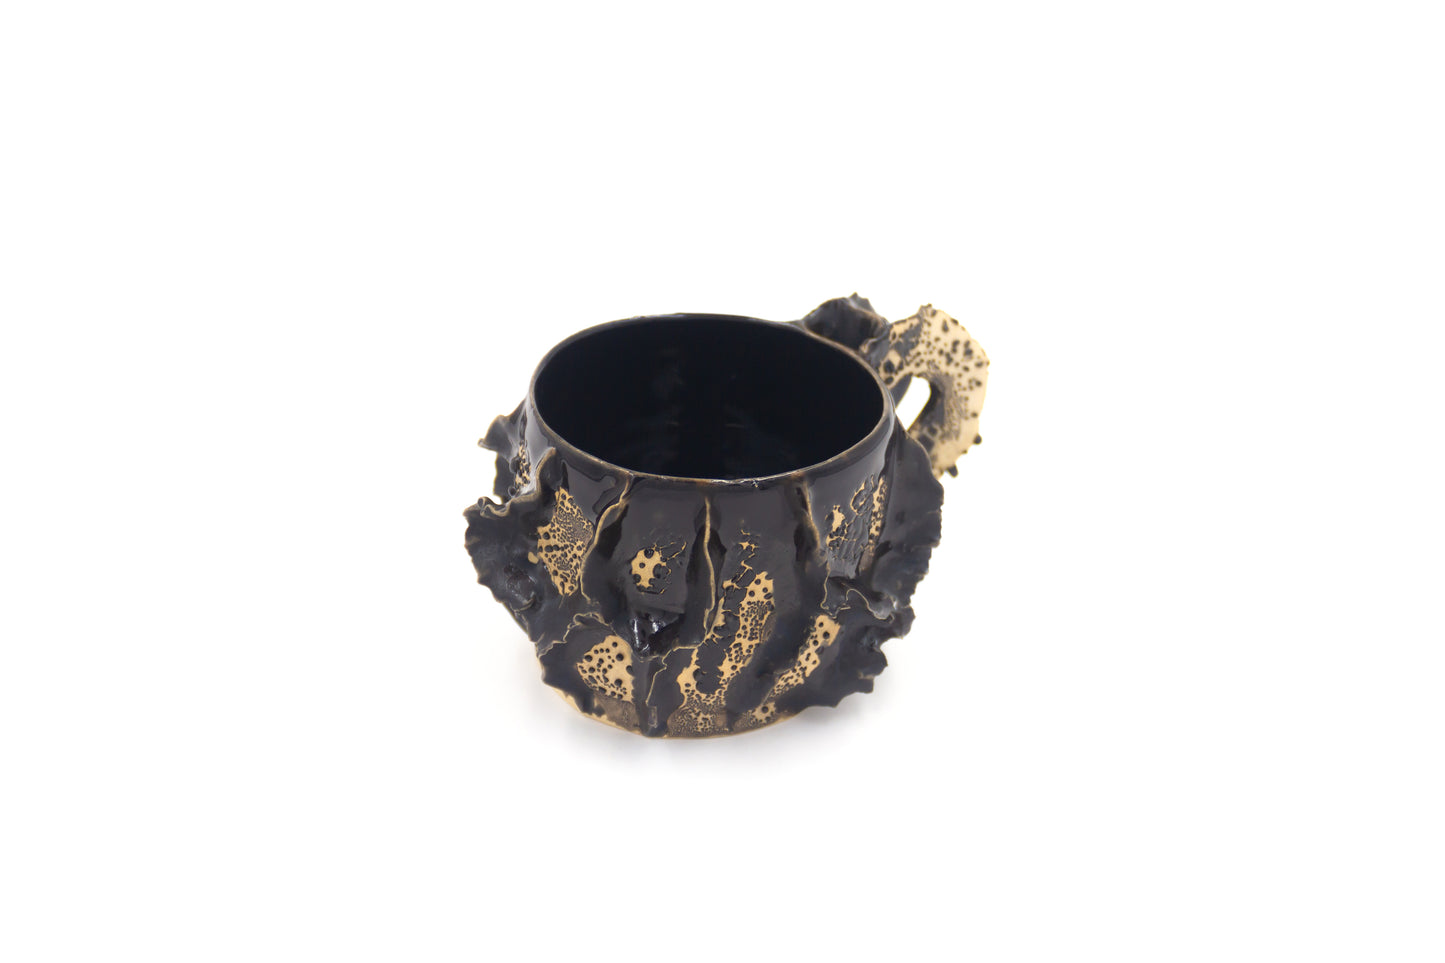 Kubek ceramiczny w kolorze czarno-beżowym